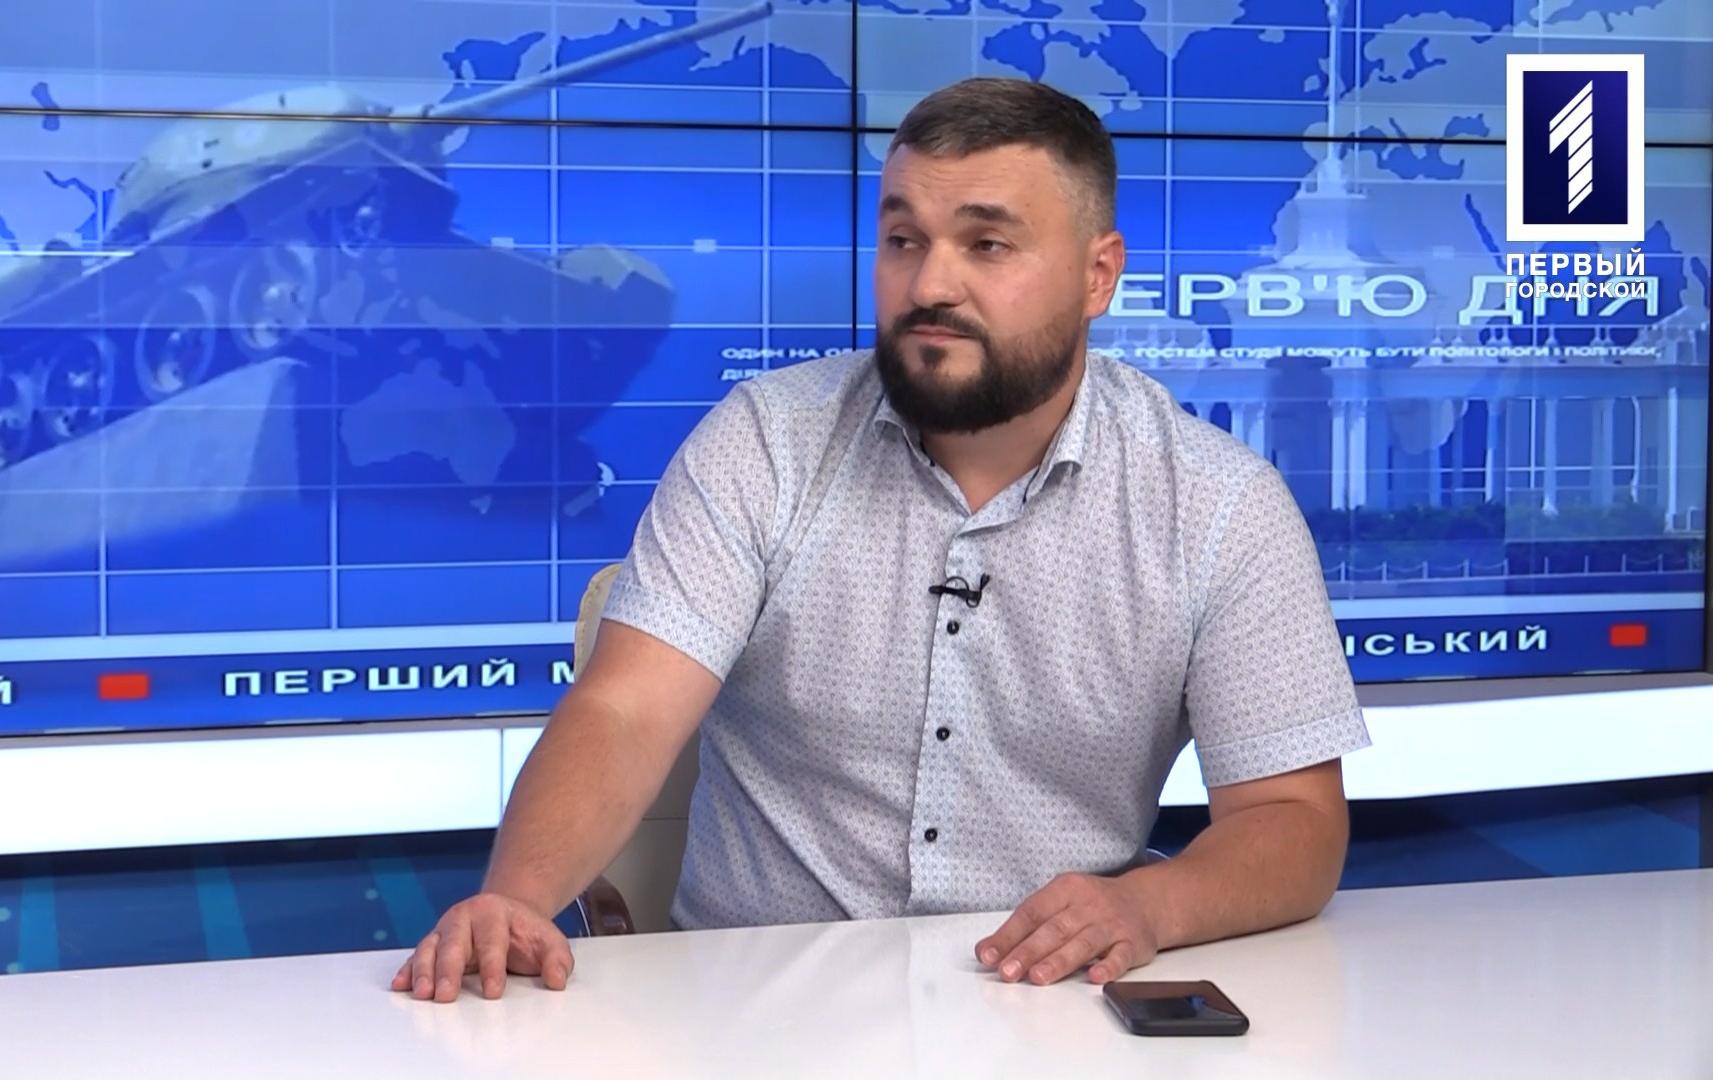 Інтерв’ю дня: Сергій Ільїн - рієлтор, директор агентства нерухомості